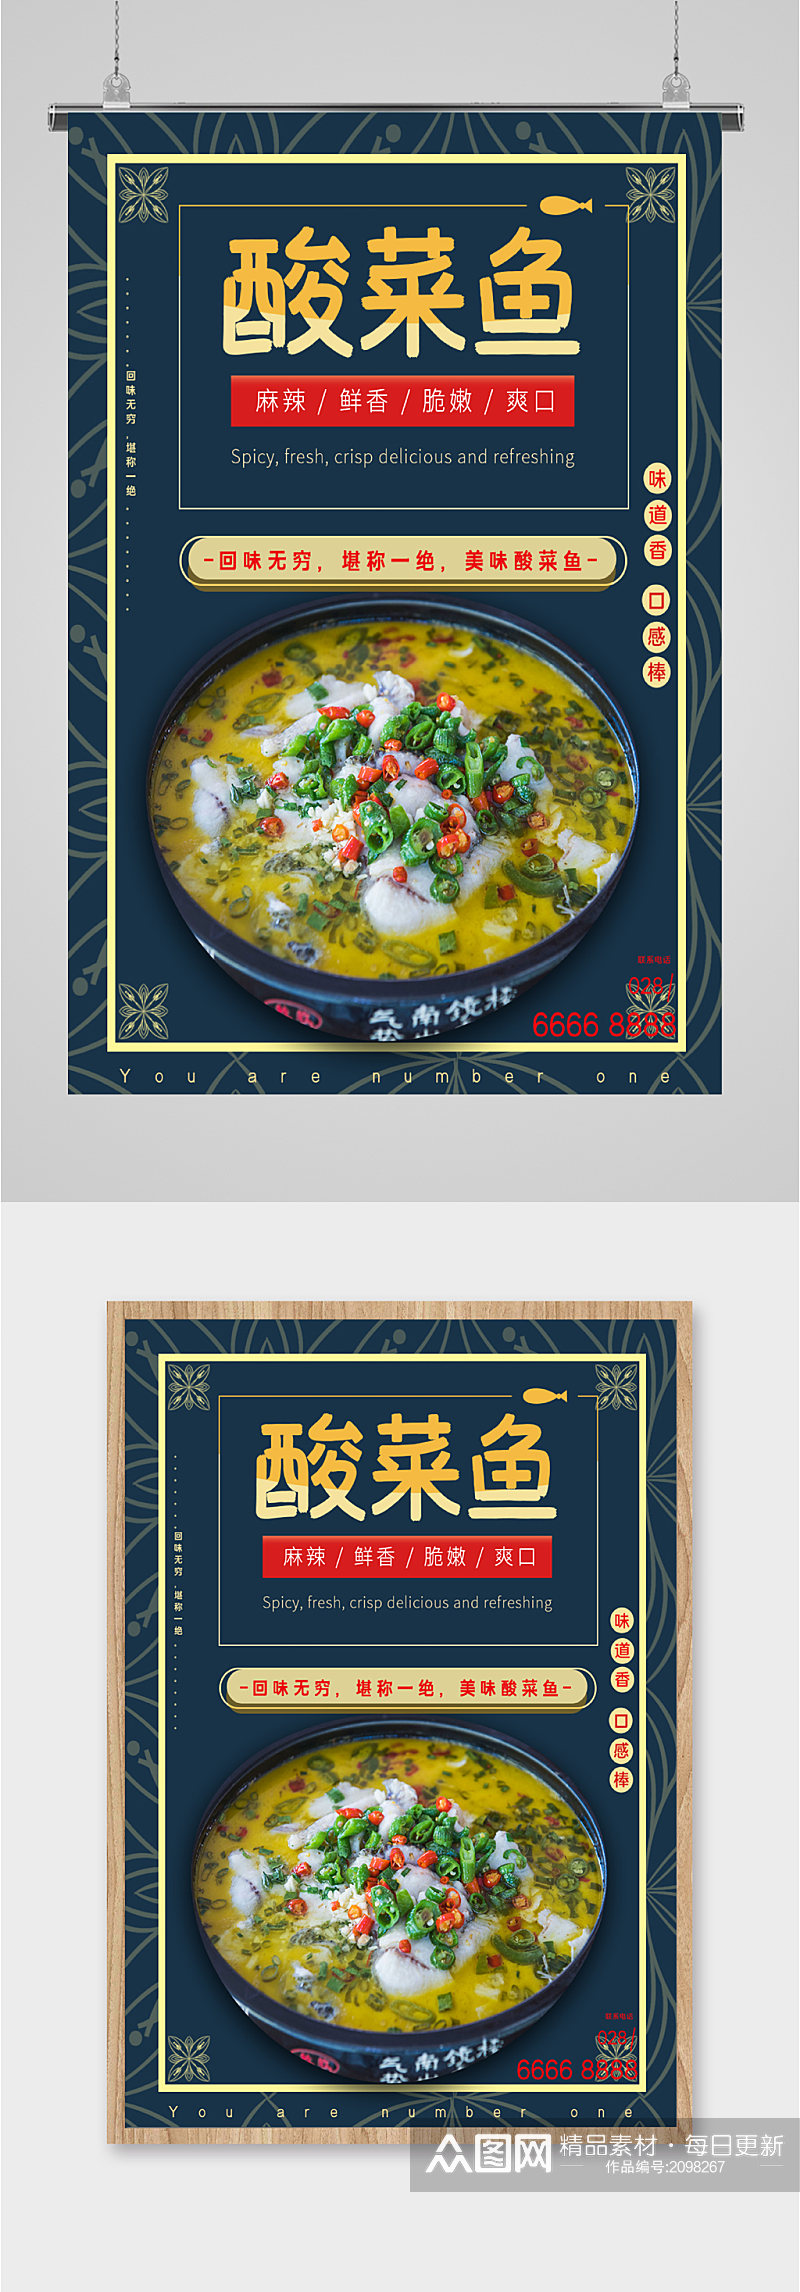 四川酸菜鱼美食海报素材